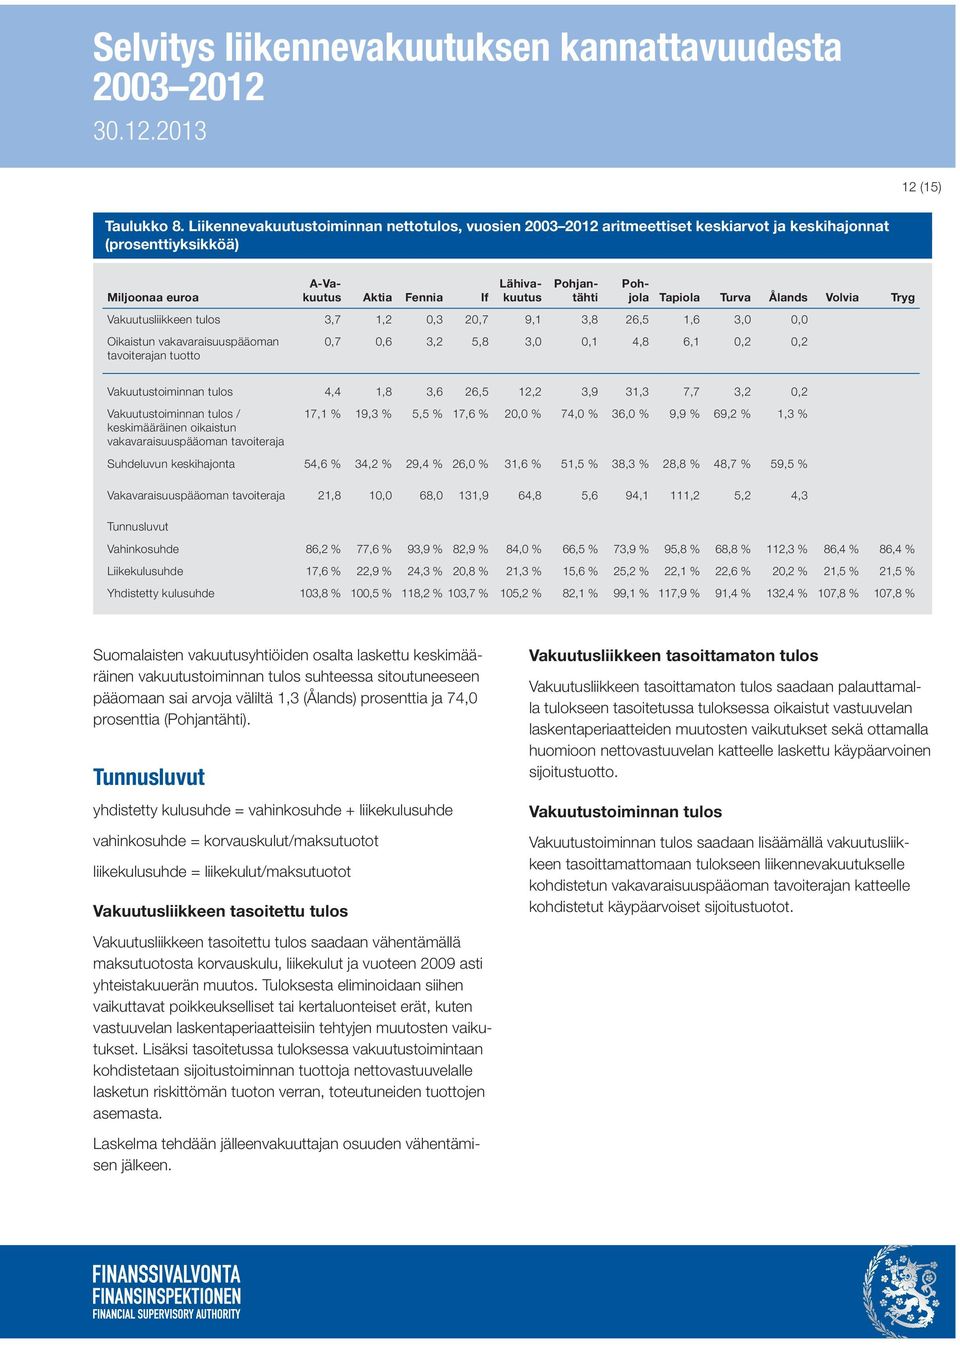 Ålands Volvia Tryg Vakuutusliikkeen tulos 3,7 1,2 0,3 20,7 9,1 3,8 26,5 1,6 3,0 0,0 Oikaistun vakavaraisuuspääoman tavoiterajan tuotto 0,7 0,6 3,2 5,8 3,0 0,1 4,8 6,1 0,2 0,2 Vakuutustoiminnan tulos